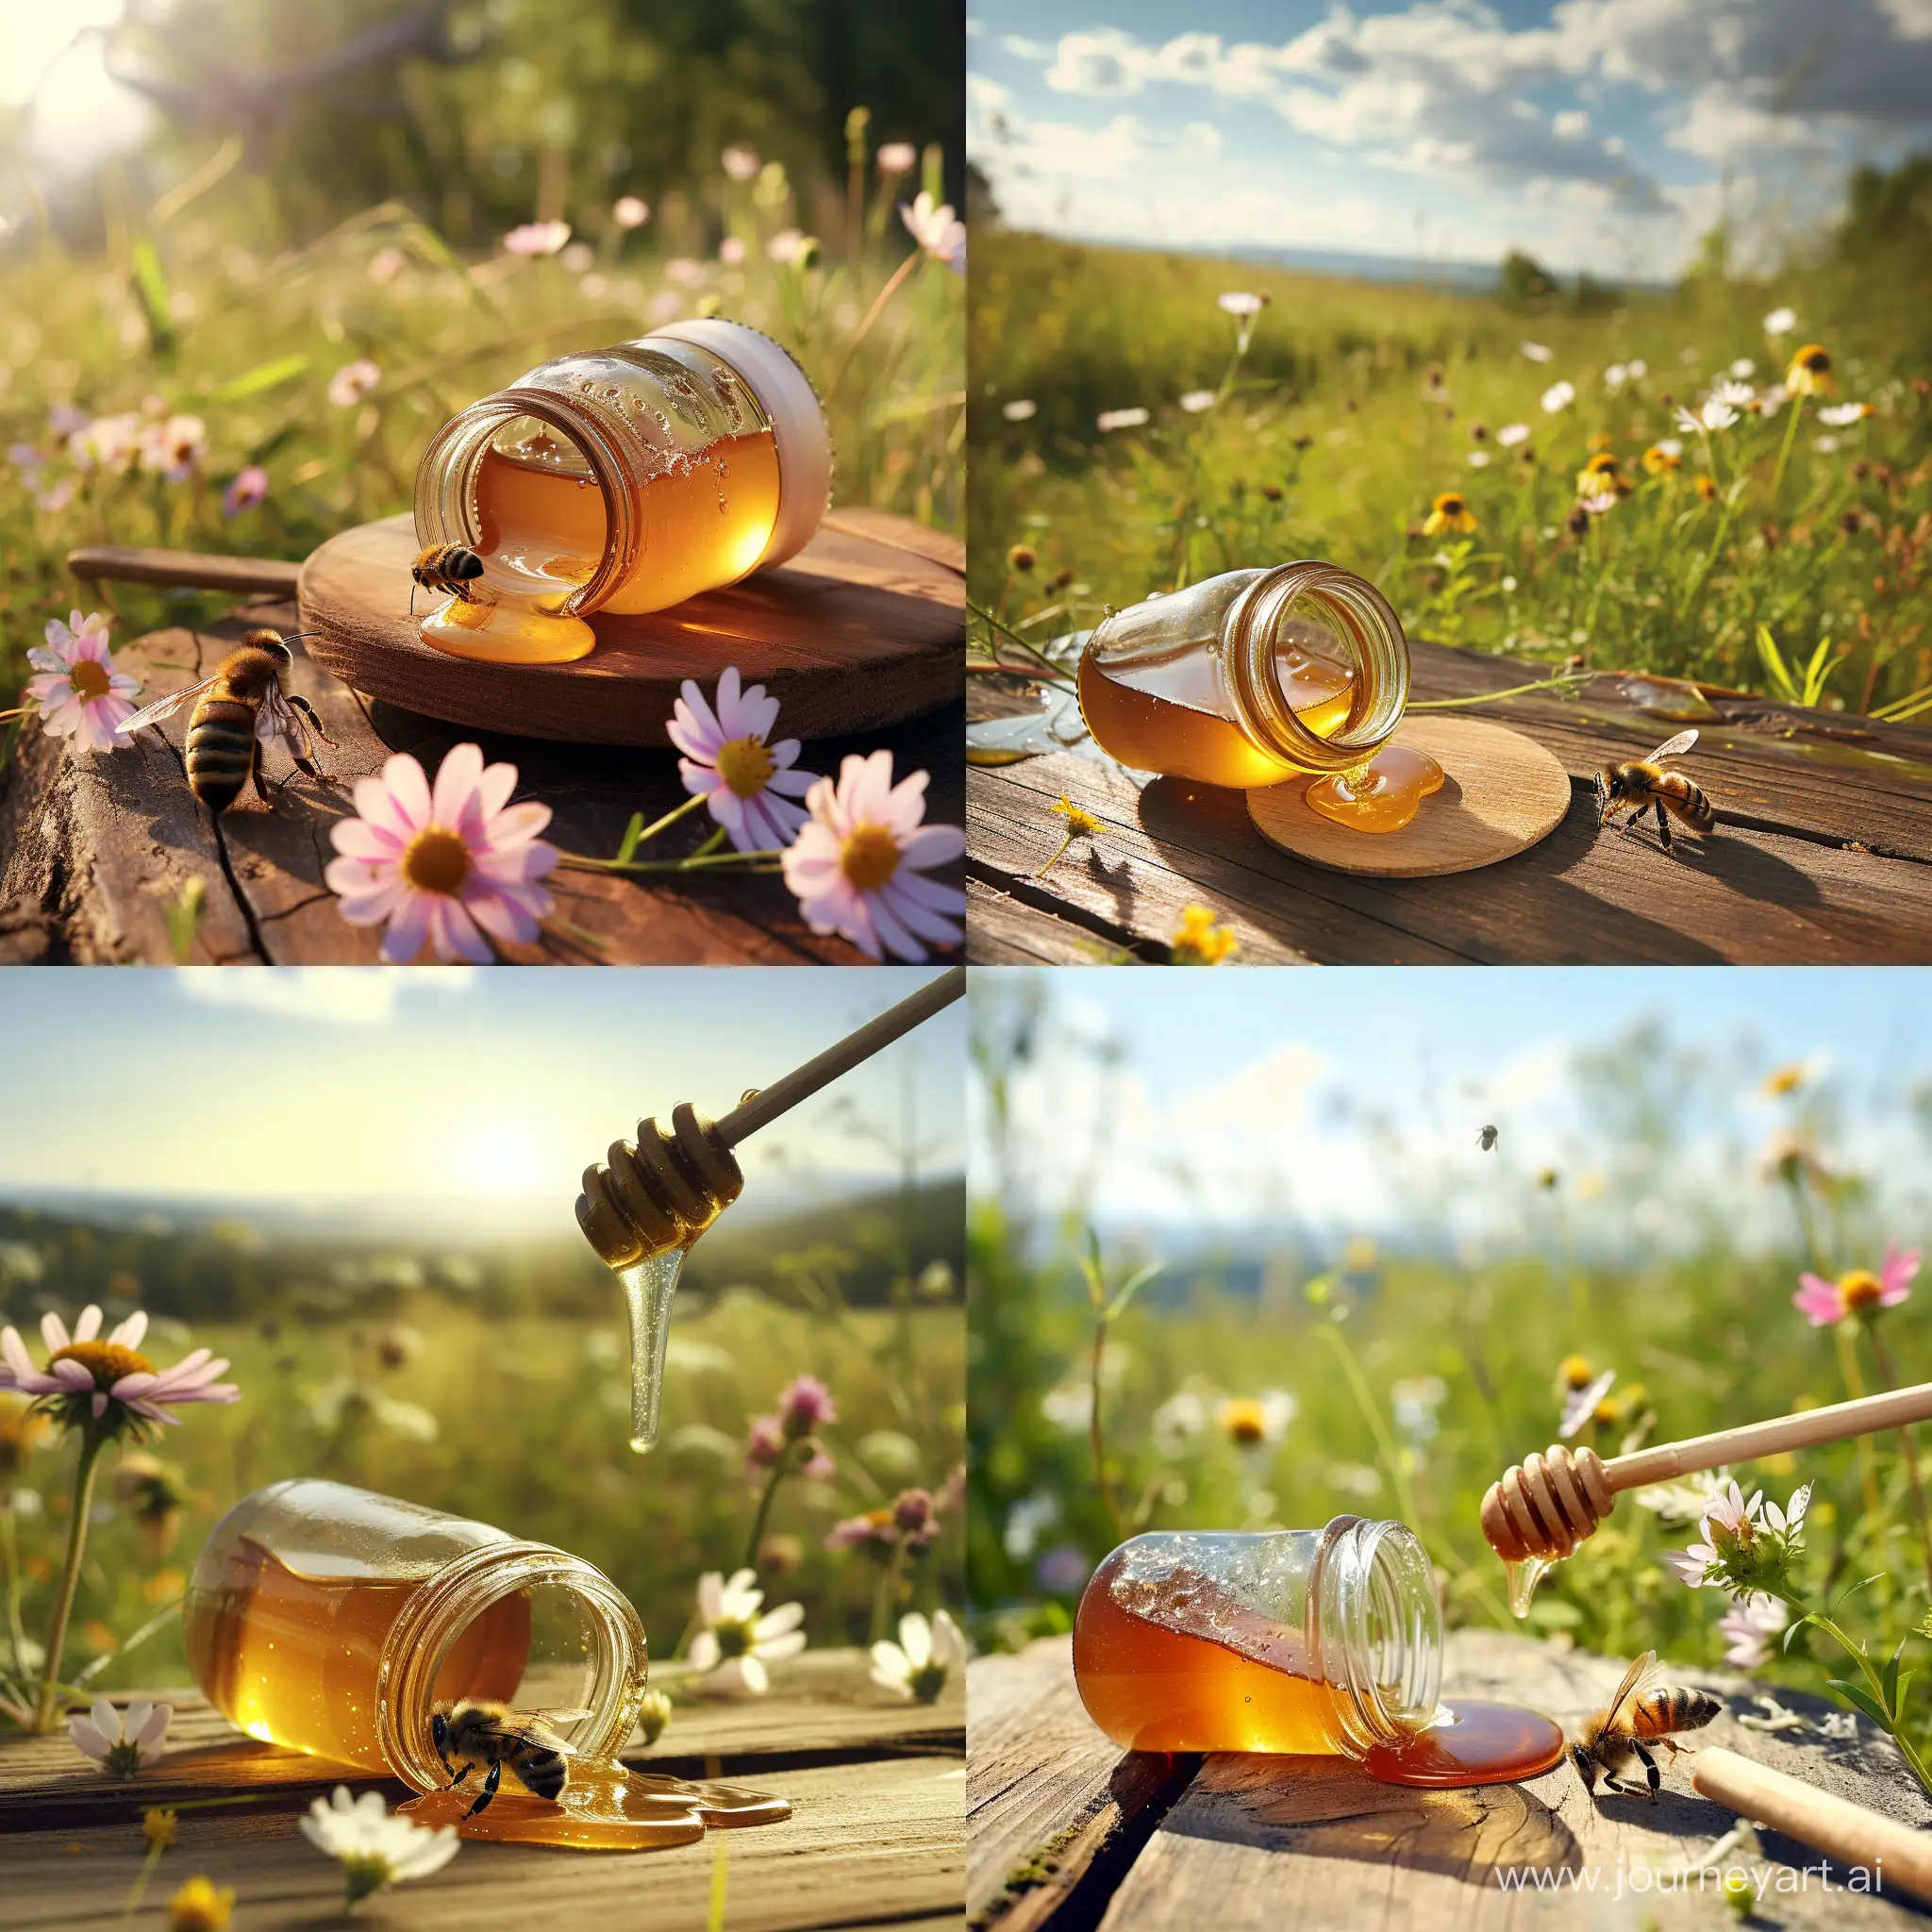 Umgefallenes offenes Honigglas liegt auf einem Holztisch im Freien. Eine Honigbiene sammelt die kleine Menge Honig die ausgelaufen ist vom Tisch. Der Tisch steht auf einer Wiese mit blühenden Wildblumen.